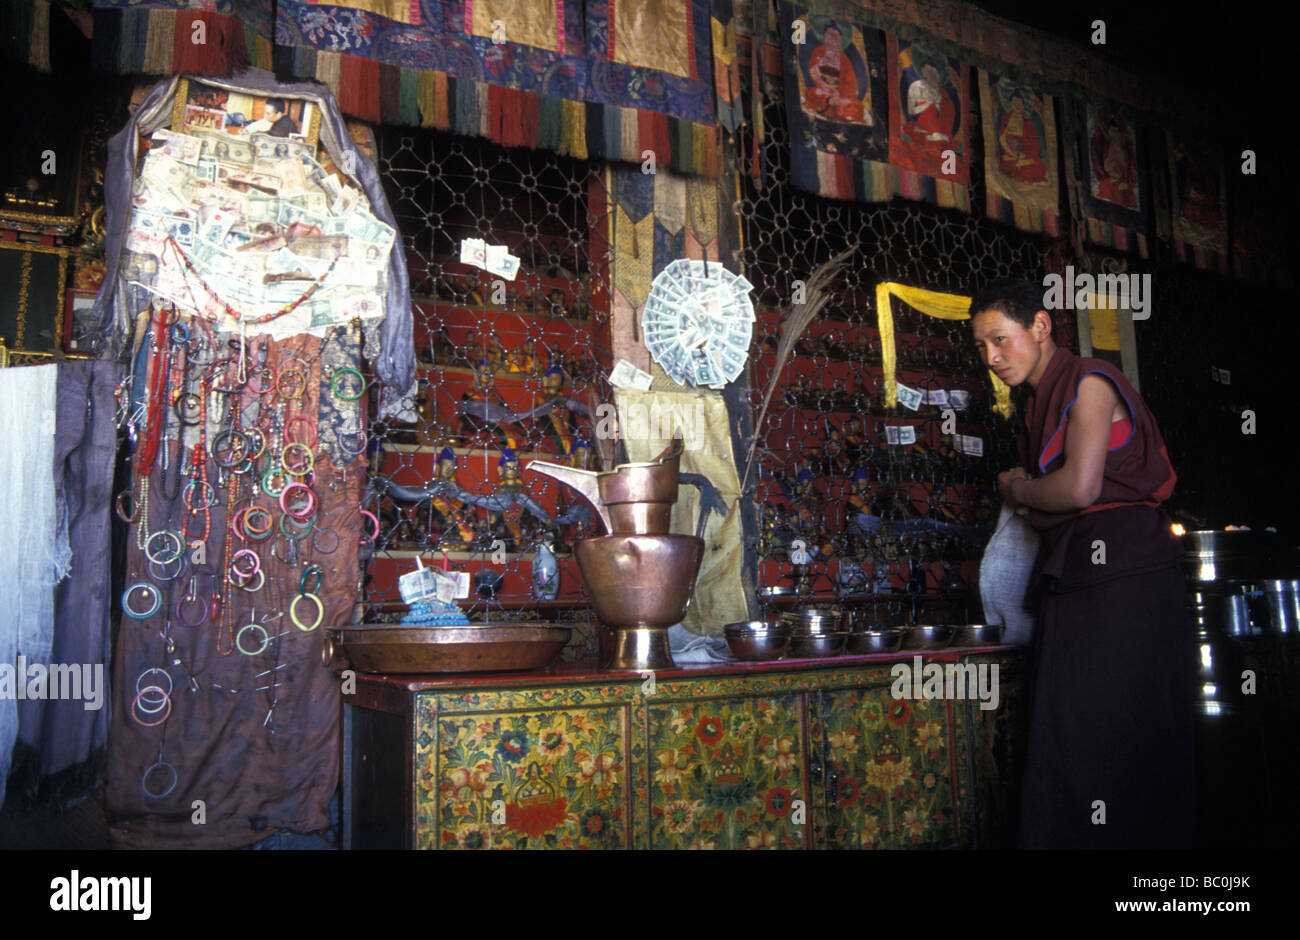 religiöse tibetisch-buddhistischen Angebote Anfänger Gelugpa Mönch Sera Gompa Lhasa Tibet autonome Region Peoples Republic Of China Stockfoto